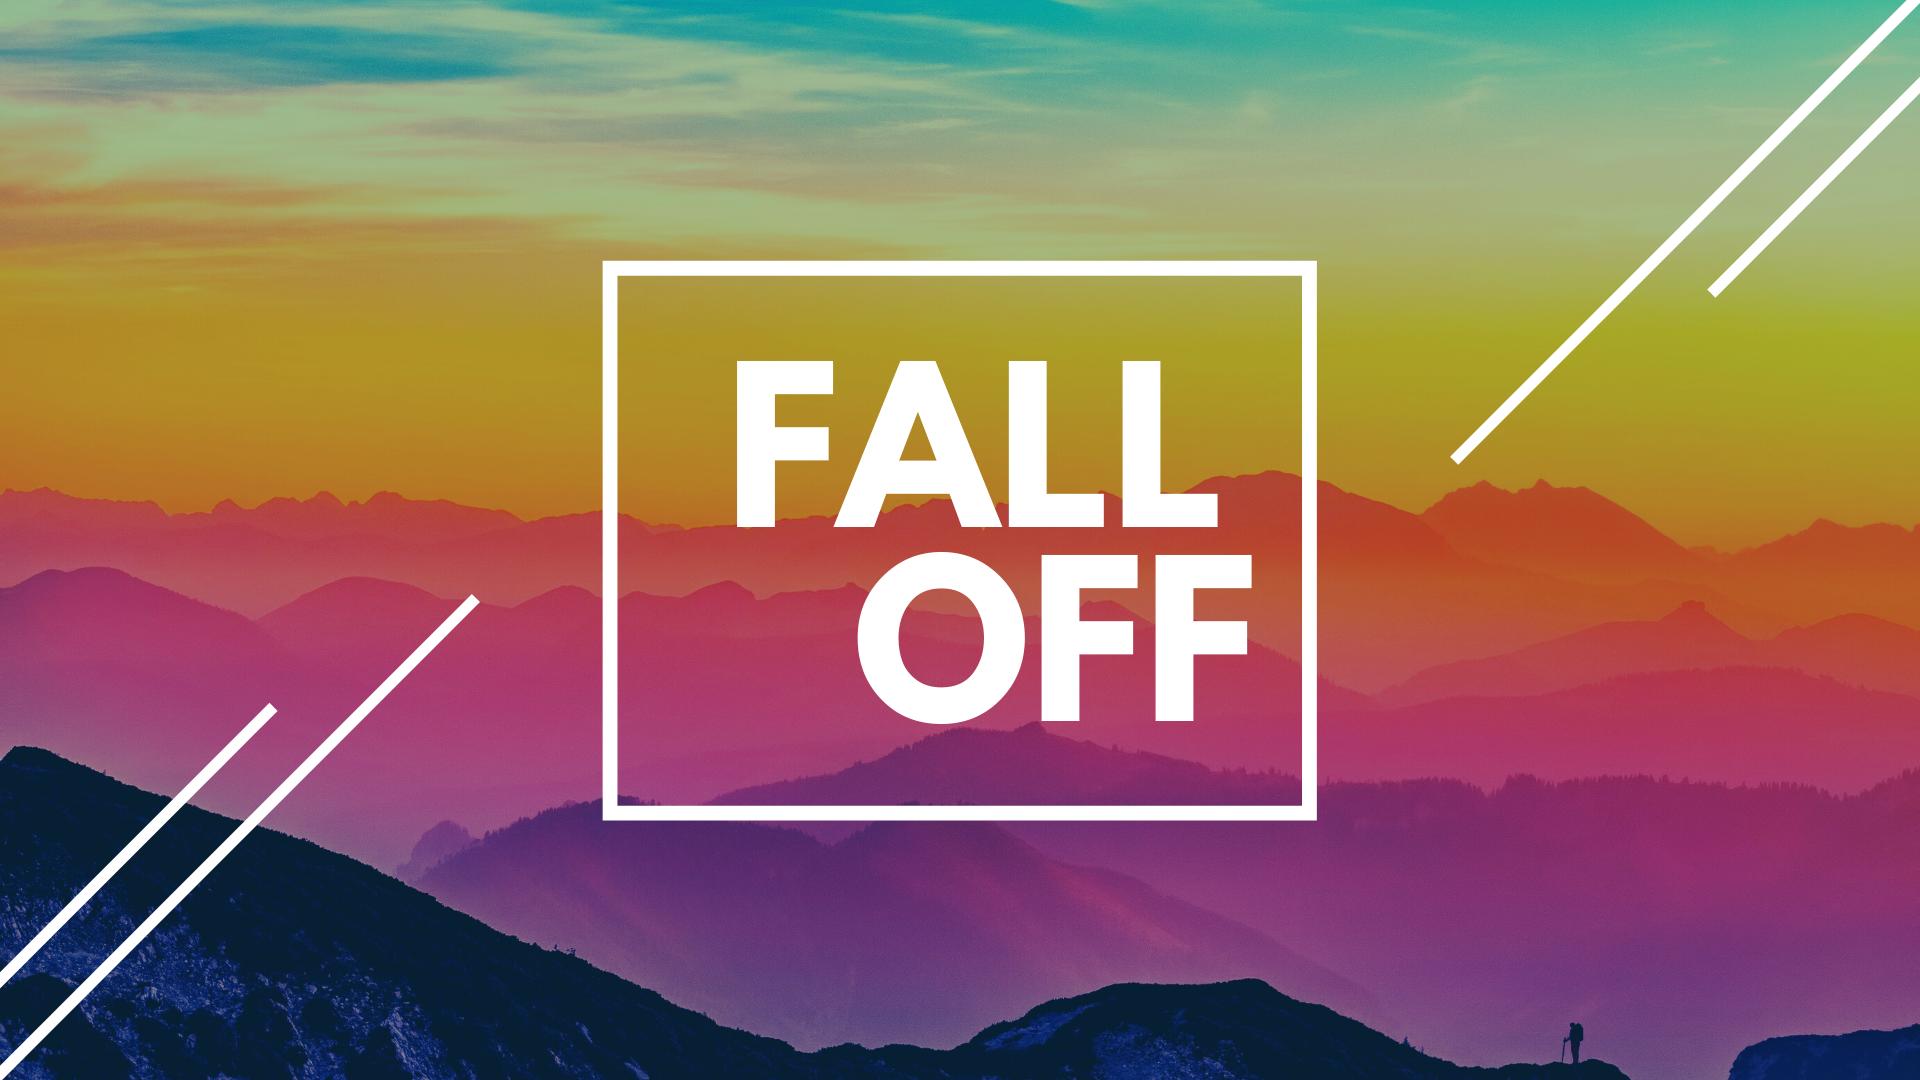 Fall Off là gì và cấu trúc cụm từ Fall Off trong câu Tiếng Anh